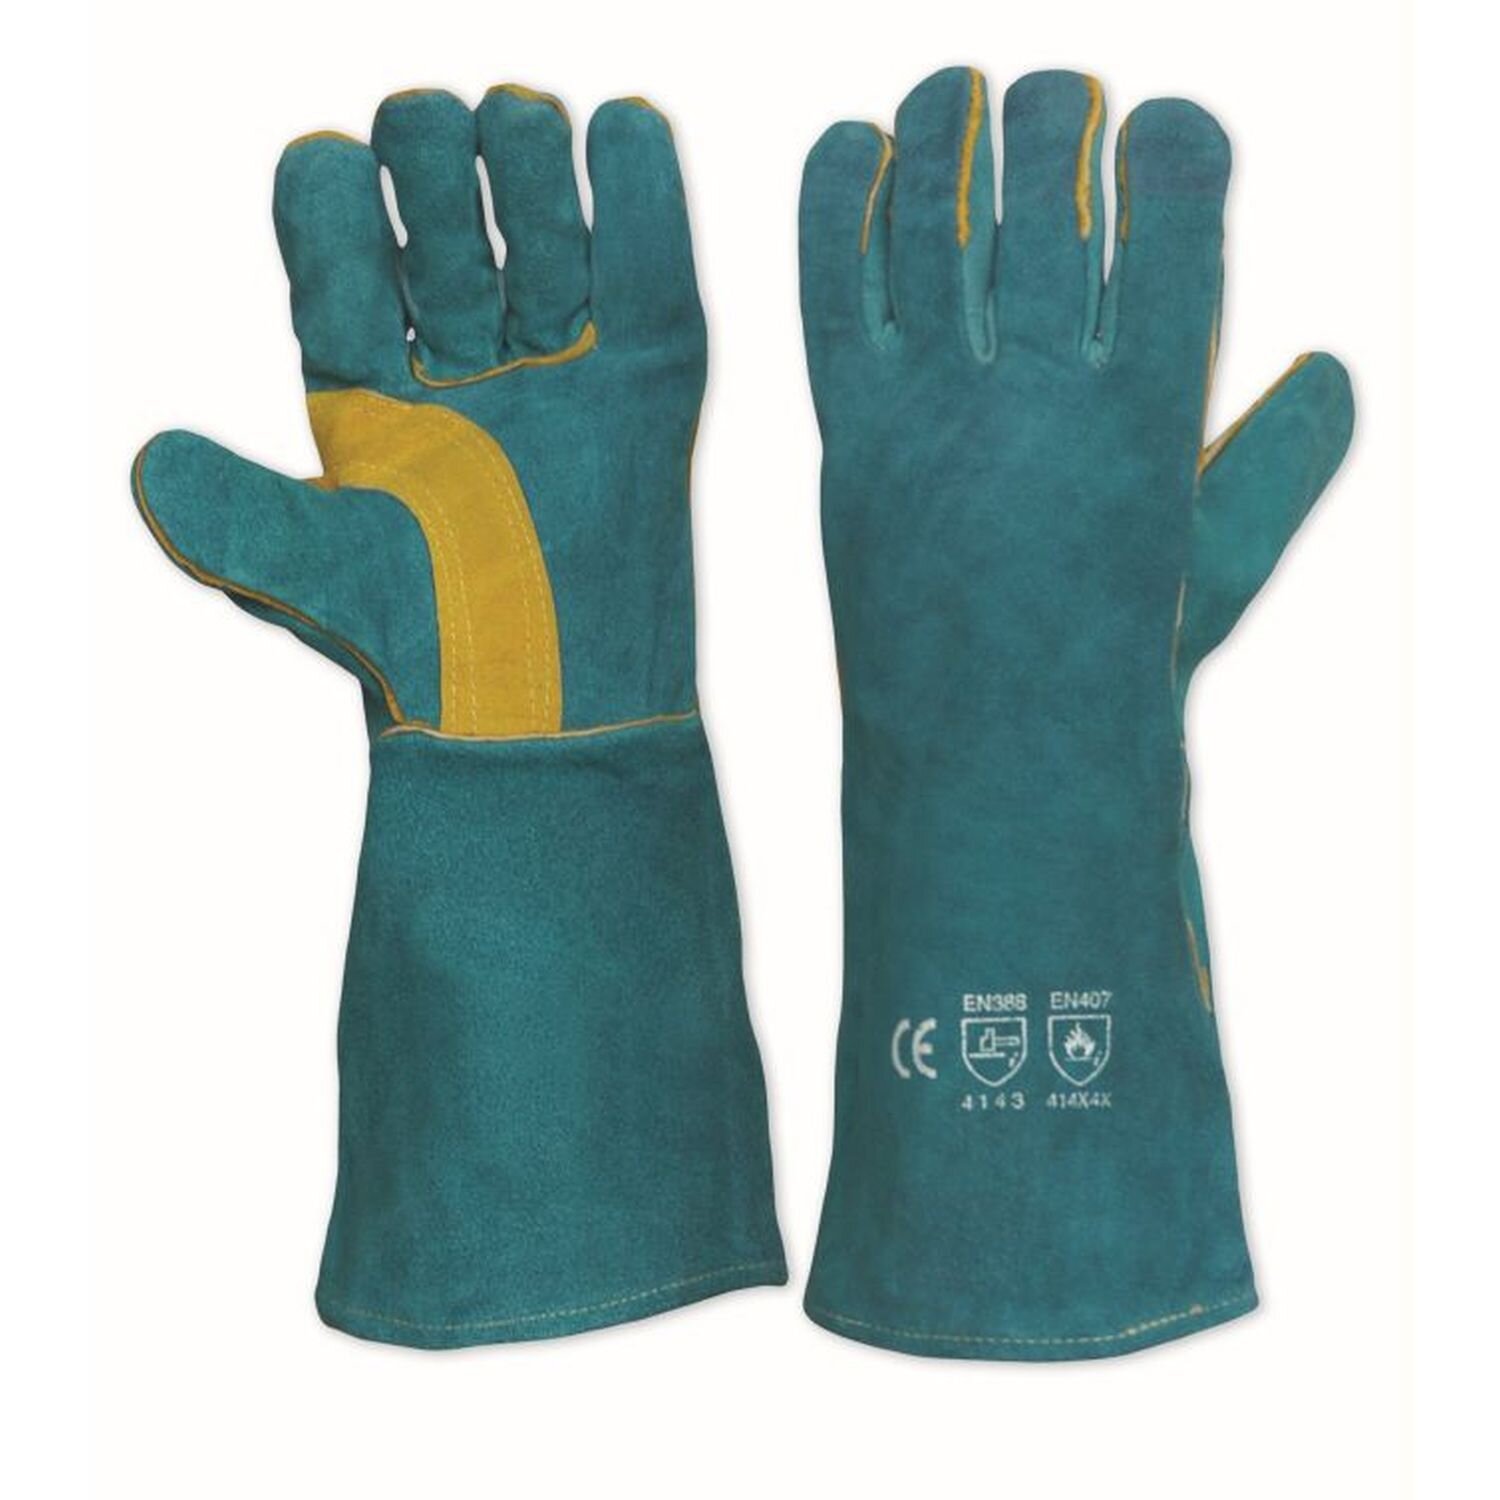 Lefties Welders Gloves 406mm pair